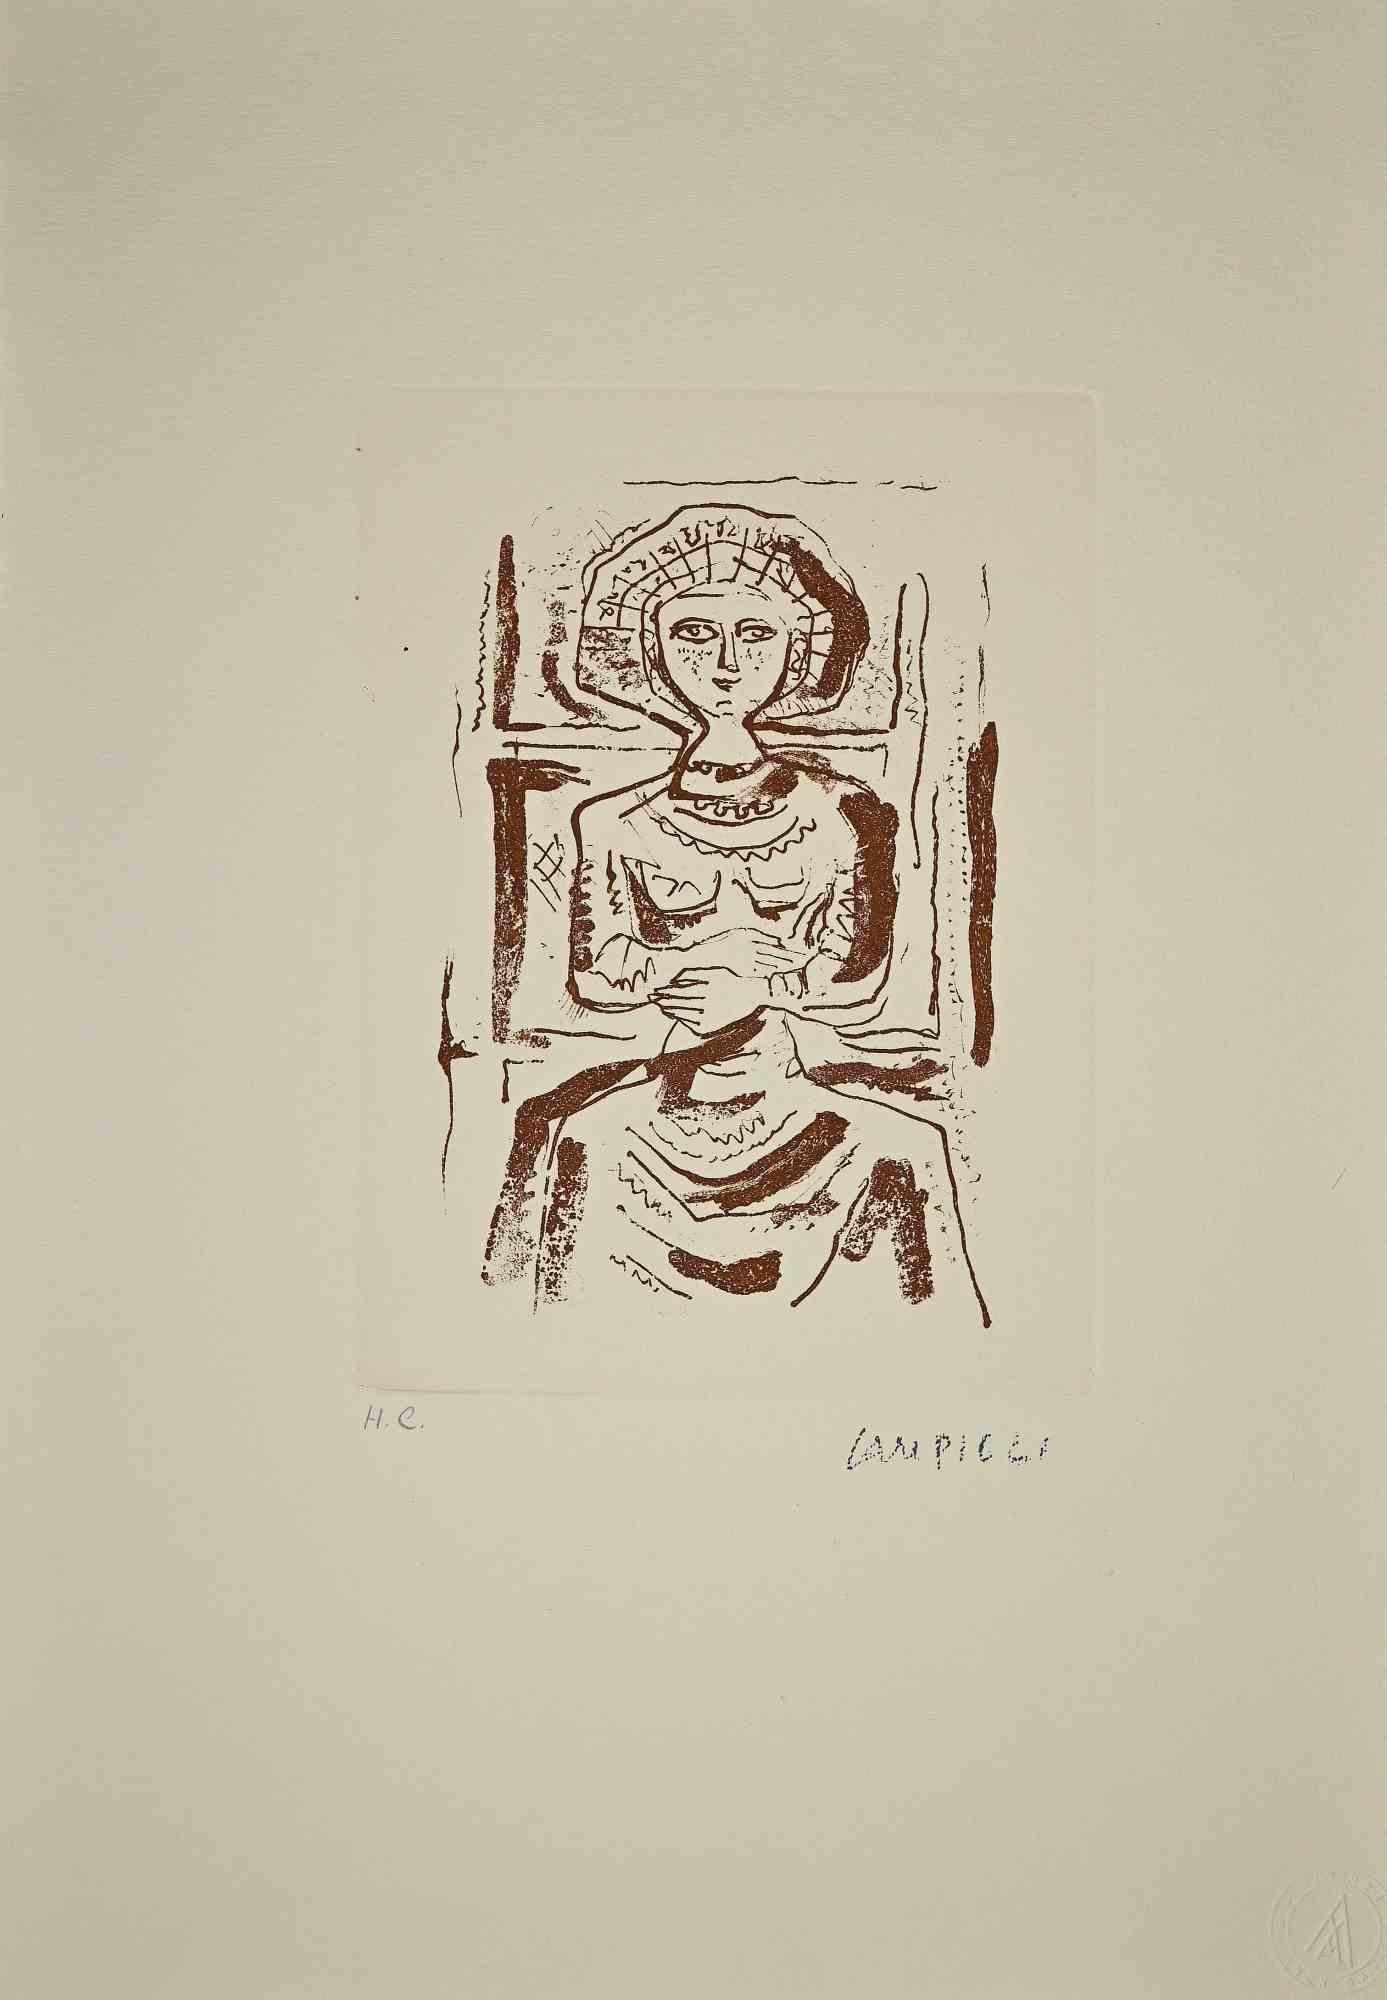 L'Idole est un tirage original réalisé par Massimo Campigli dans les années 1970/1971.

Gravure sur papier..

Cette œuvre fait partie d'une série d'œuvres créées dans la dernière période de l'artiste et imprimées au tournant de l'année de sa mort,